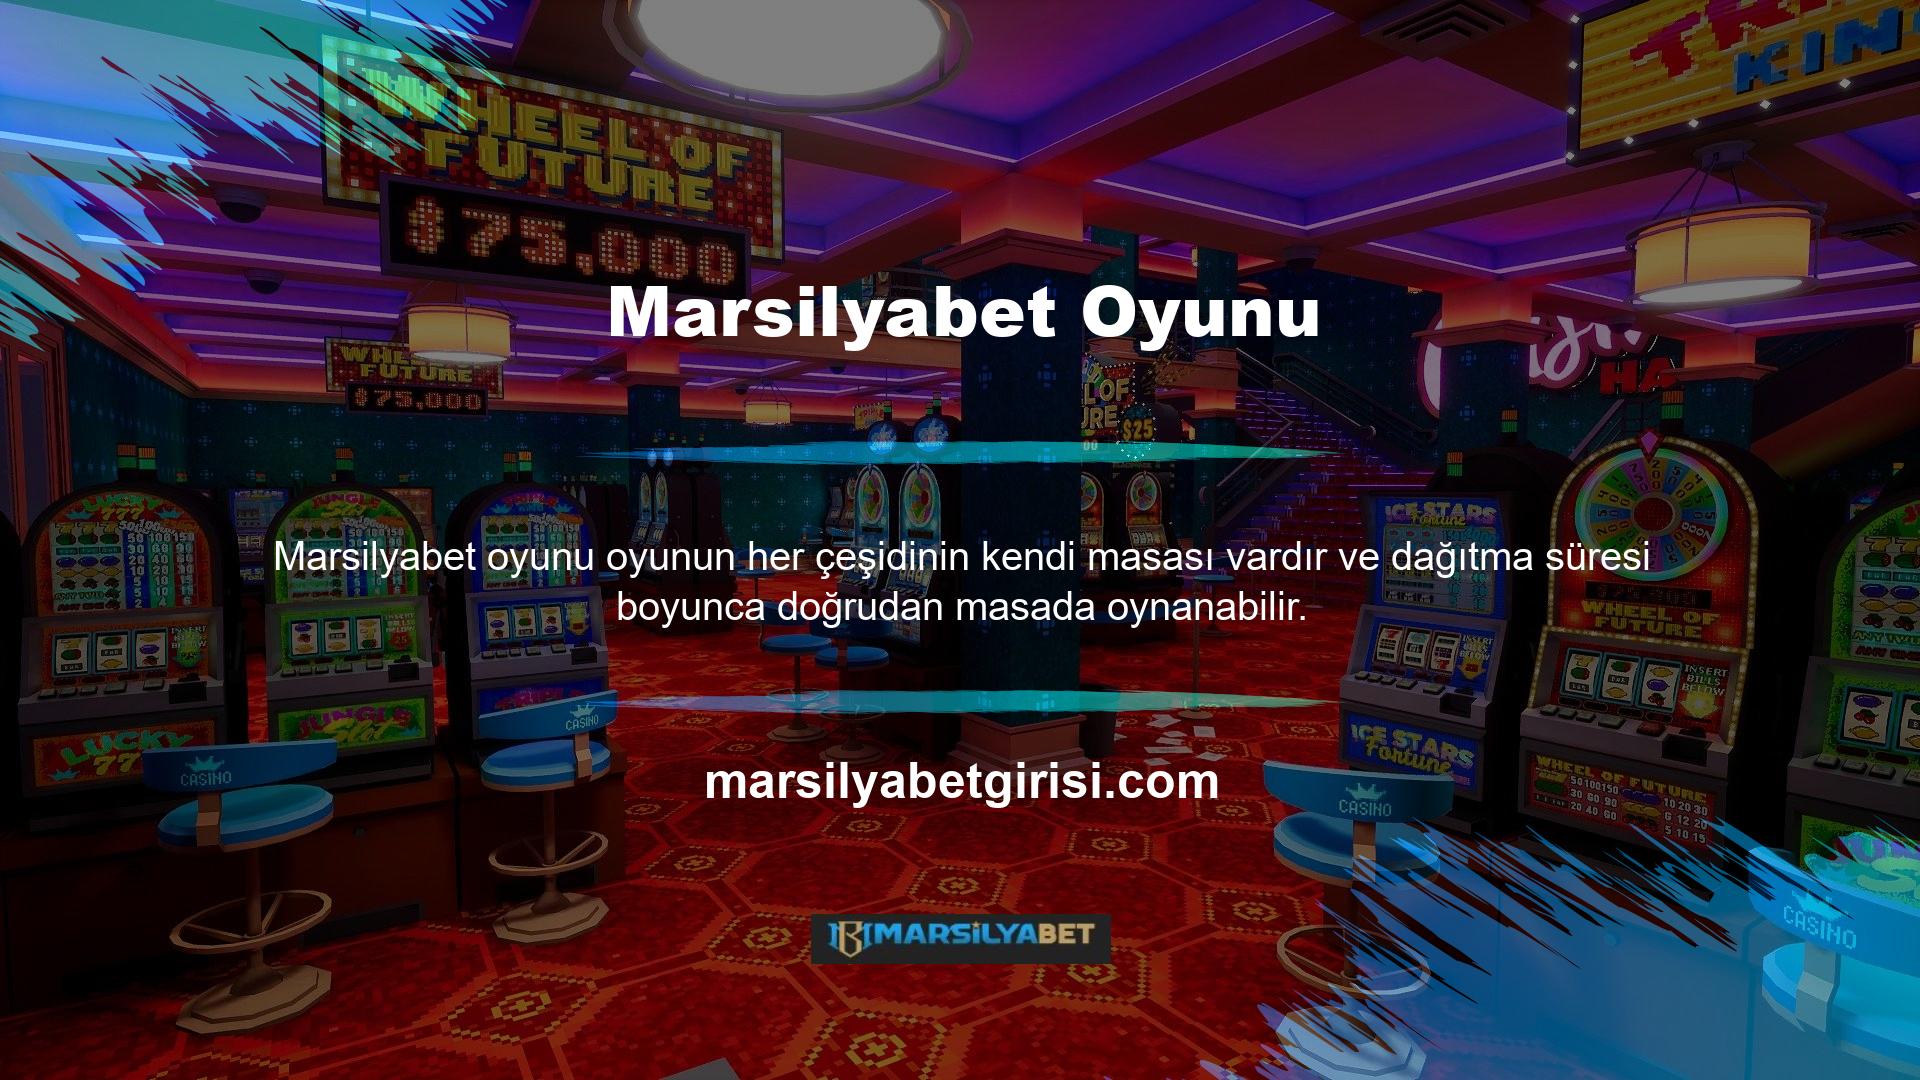 Marsilyabet Casino'da sunulan oyunlar genellikle Canlı Rulet, Canlı Bakara, Canlı Blackjack ve Canlı Poker'dir